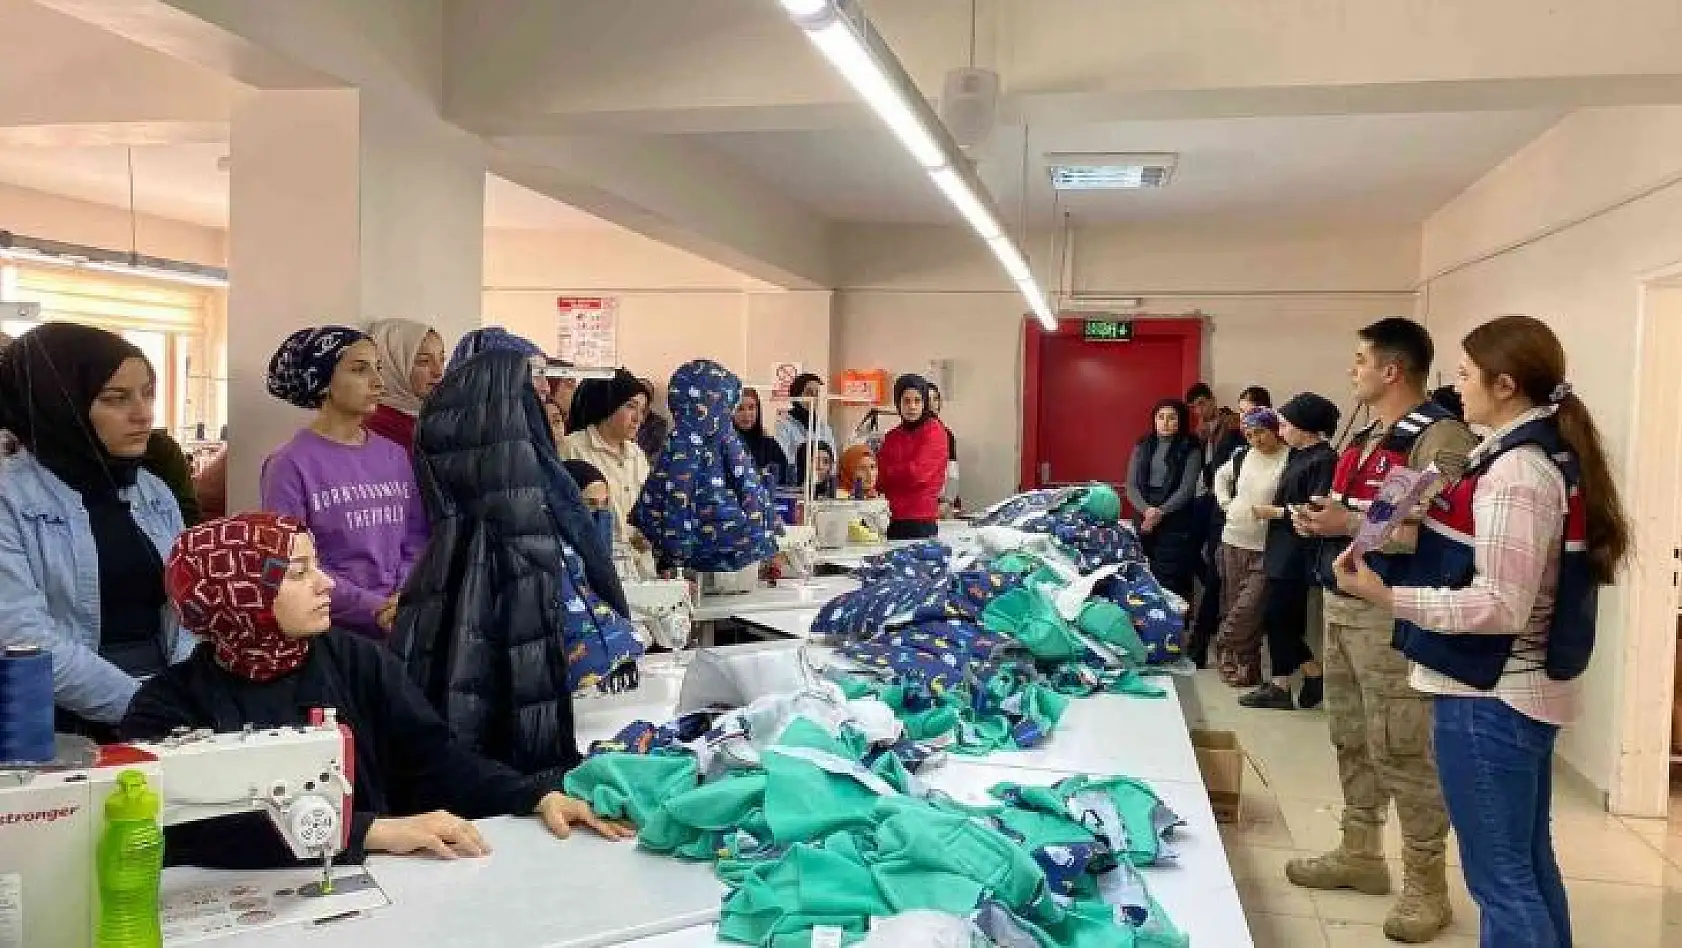 Bingöl'de tekstil çalışanlarına KADES tanıtıldı